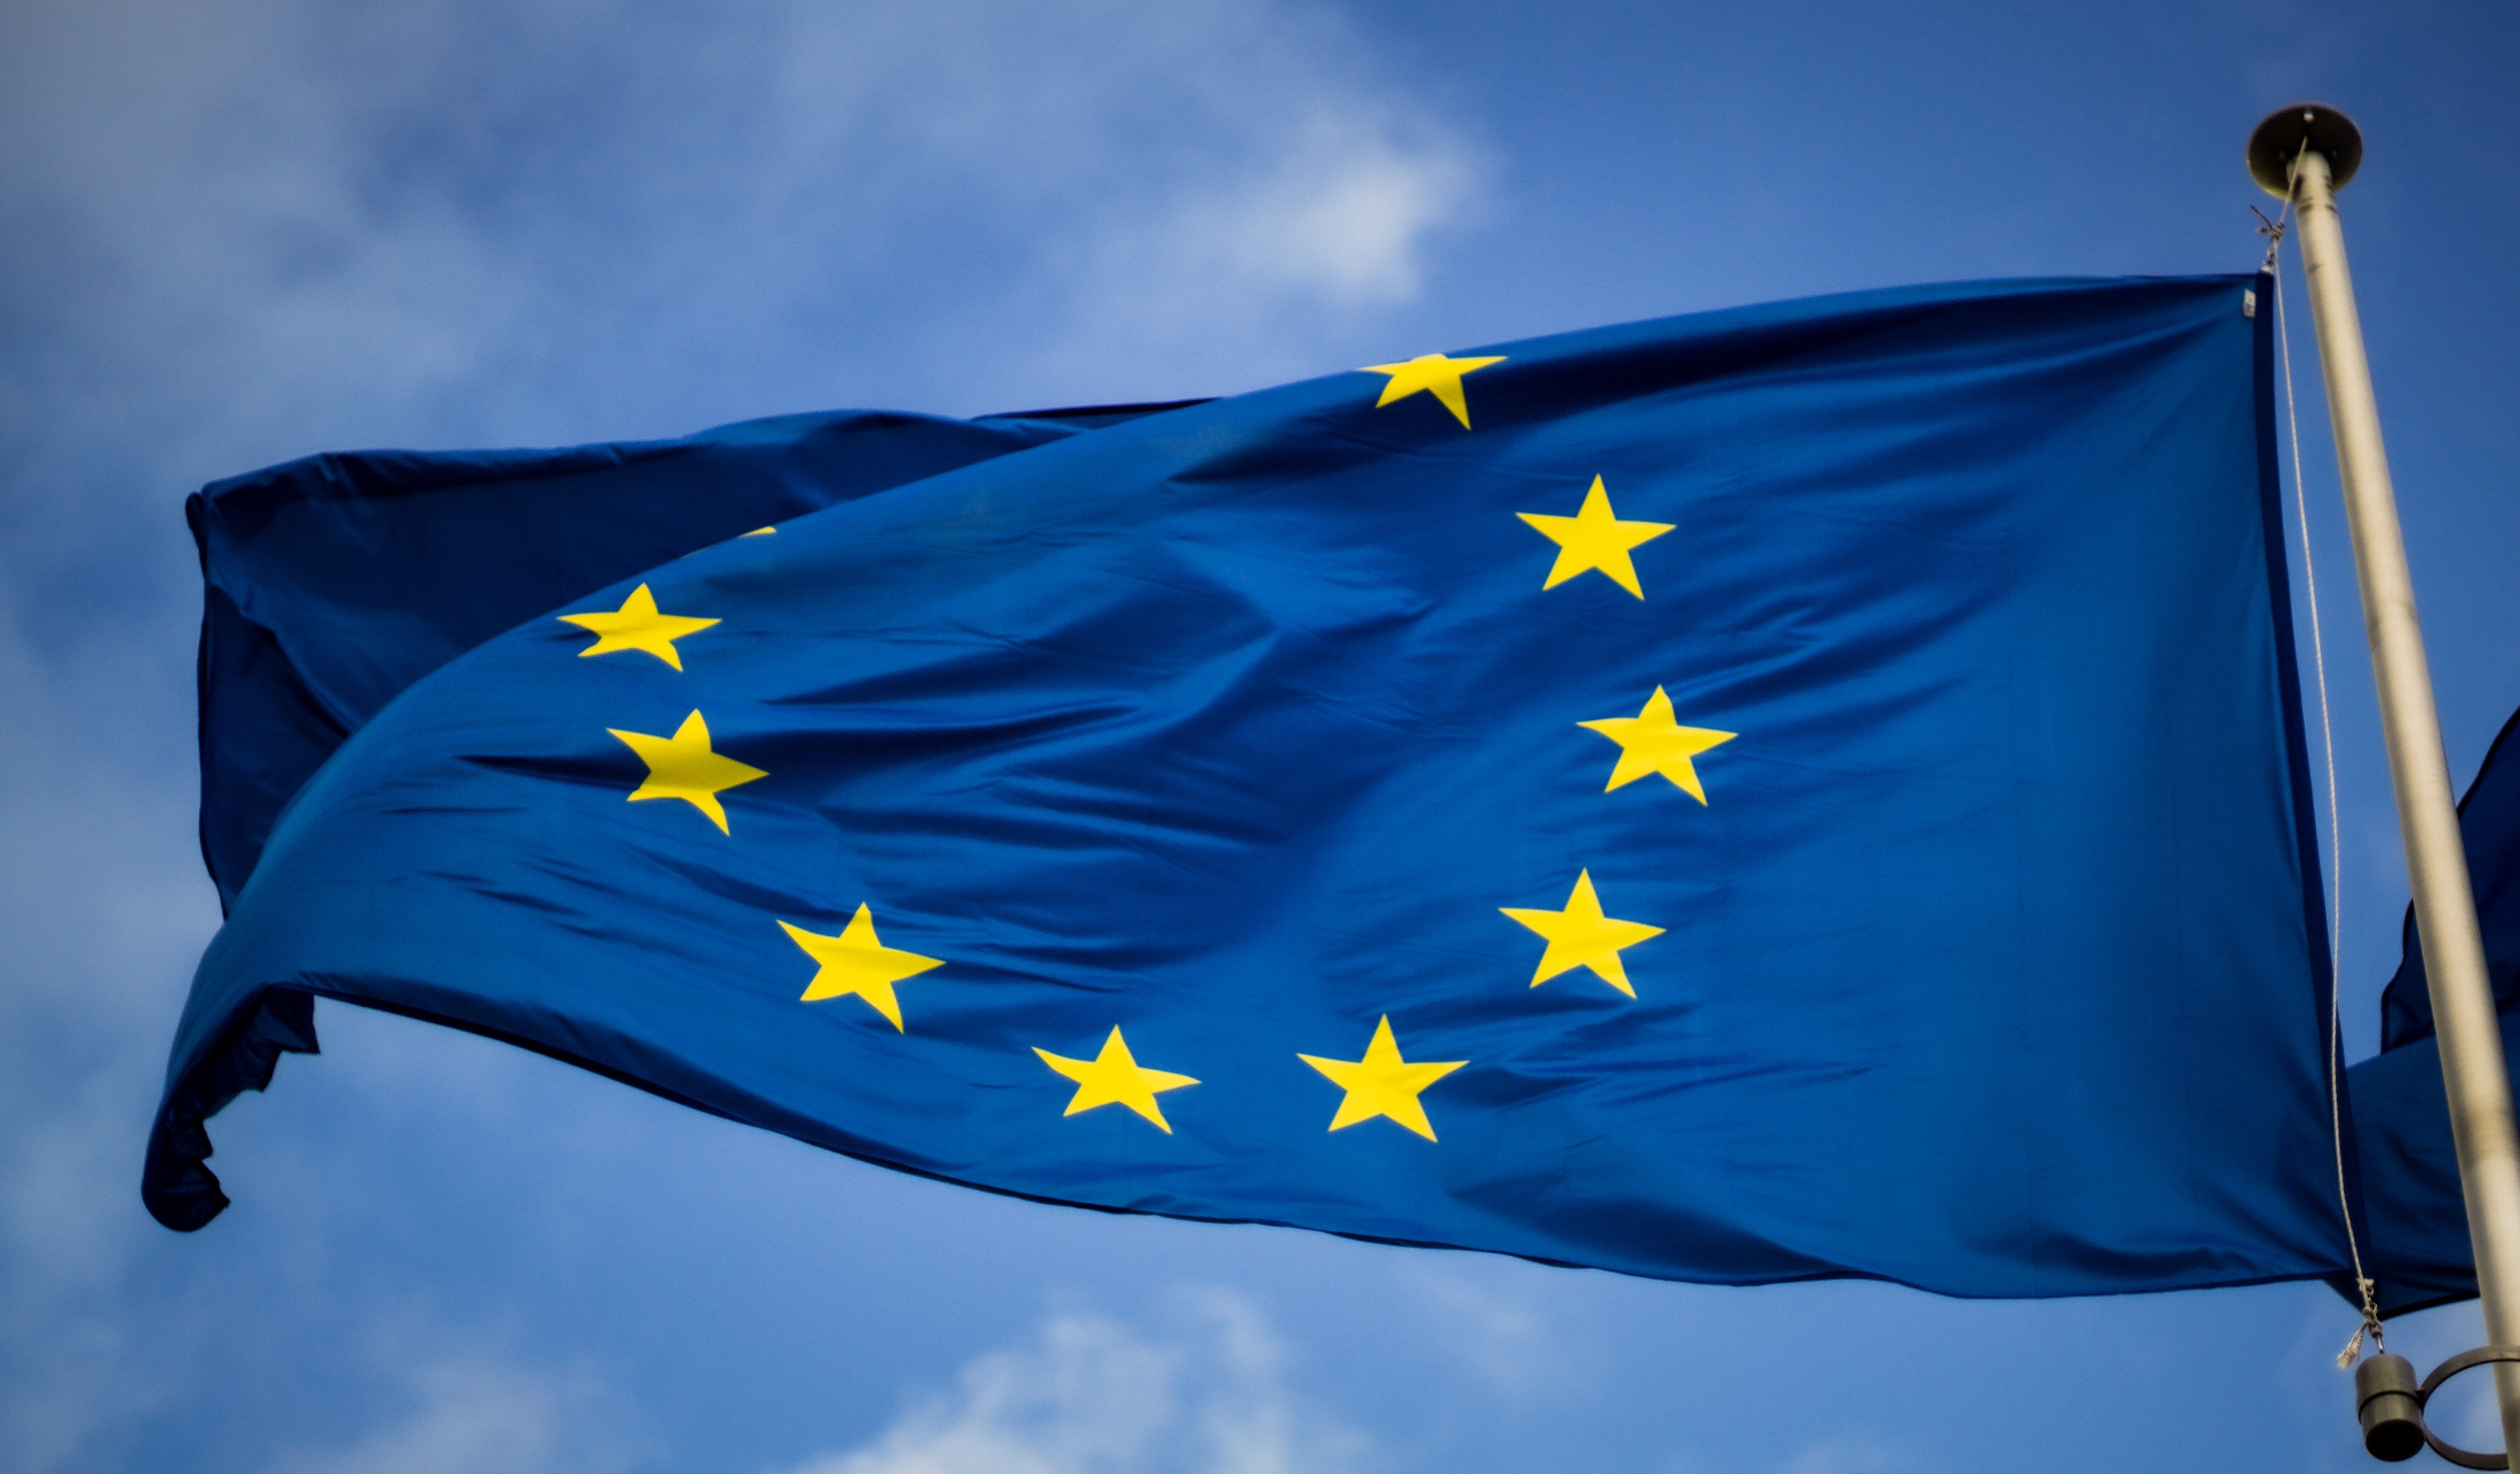 Rapport du groupe indépendant d’experts franco-allemands sur les réformes de l’Union européenne (UE)